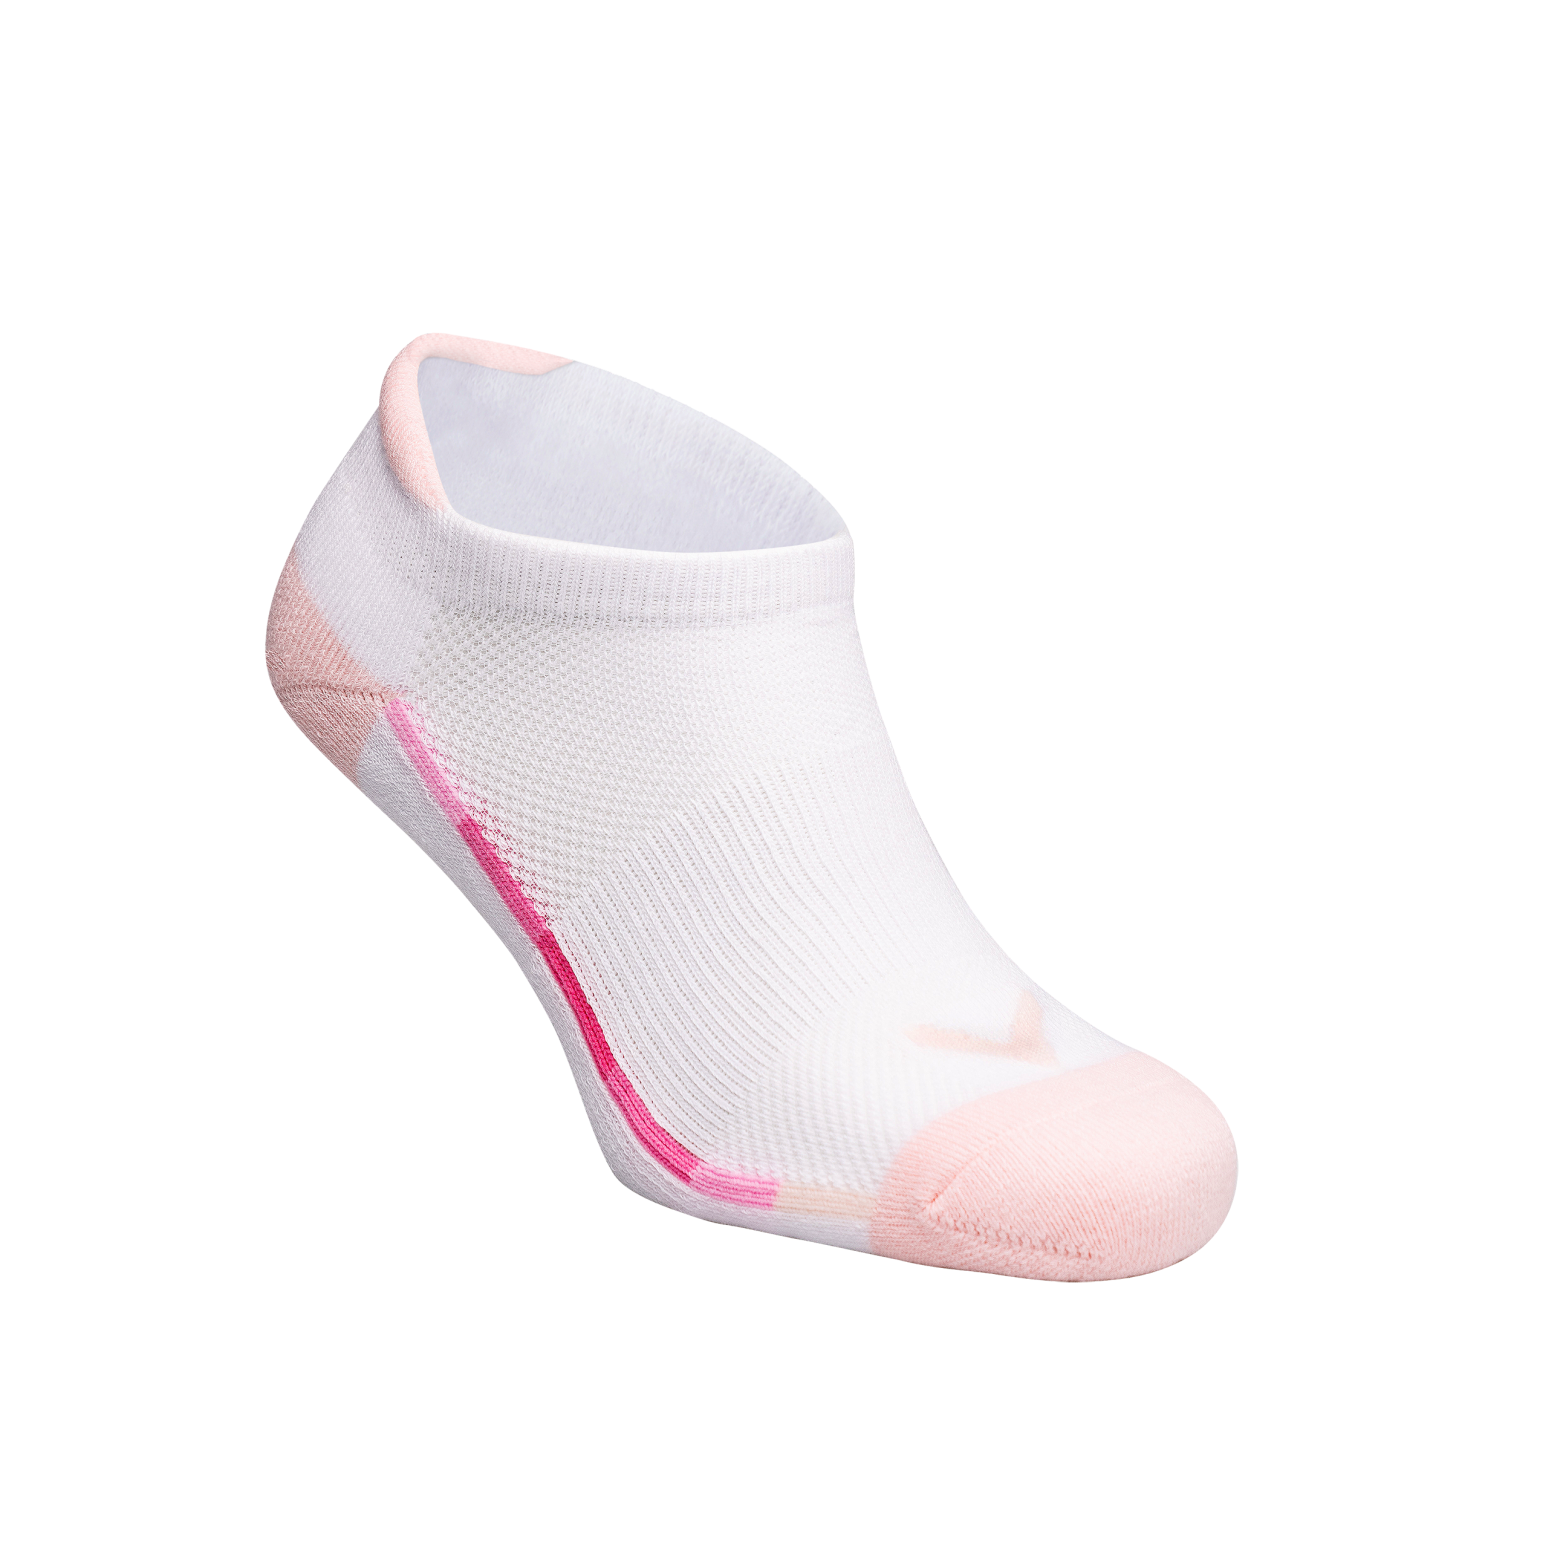 Callaway Sport Tab Low II dámské golfové ponožky, bílé/světle růžové